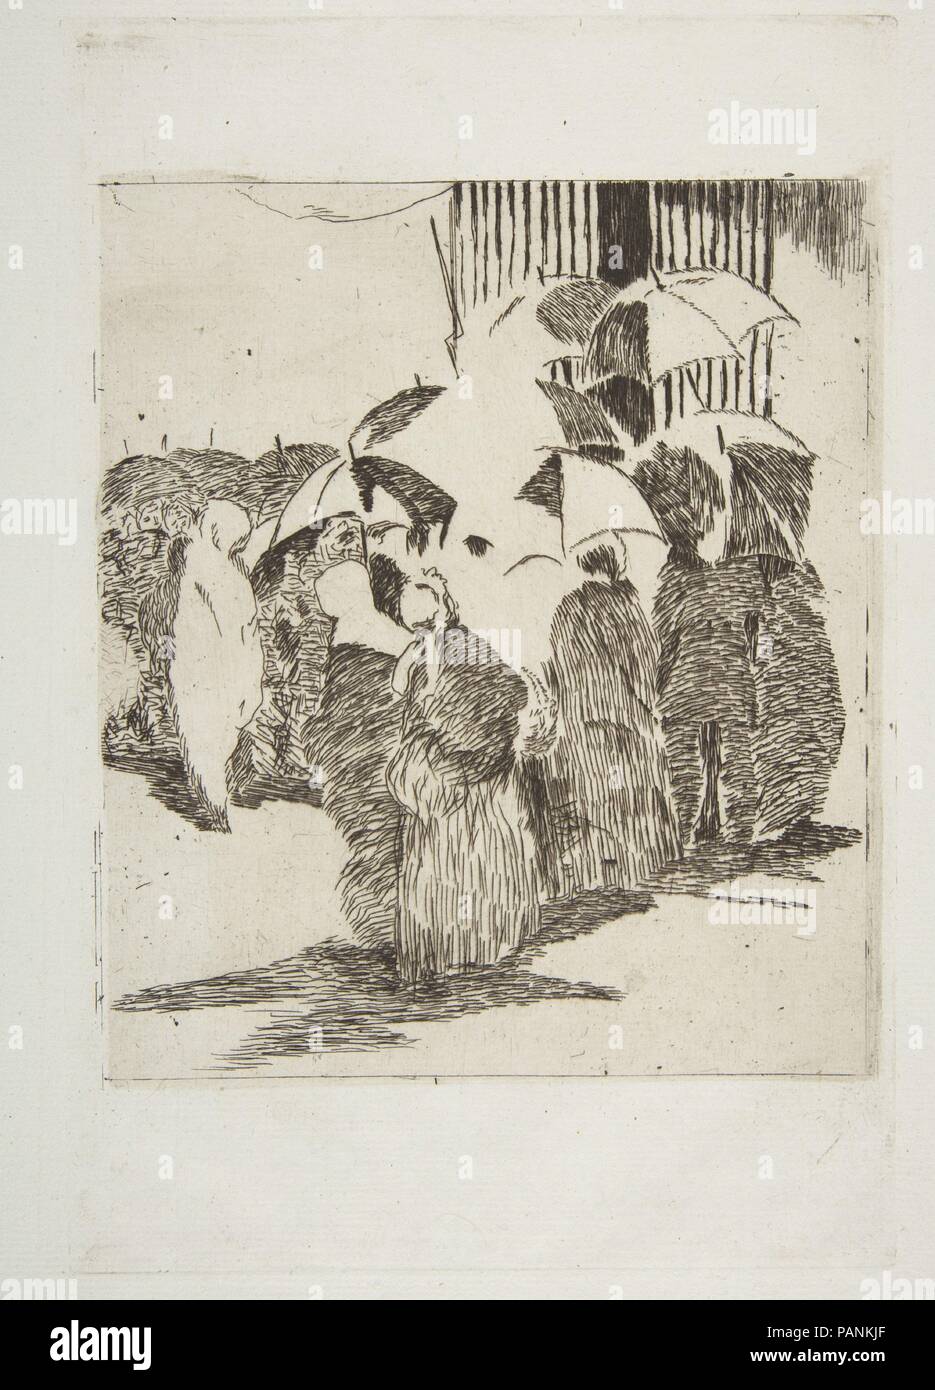 Zeile vor der Metzgerei. Artist: Édouard Manet (Französisch, Paris 1832-1883 Paris). Abmessungen: Platte: 9 1/4 x 6 1/8 in. (23,5 x 15,6 cm) Blatt: 14 1/2 x 9 1/2 in. (36,8 x 24,1 cm). Serie/Portfolio: strölin Edition, 1905. Datum: 1870-71. Museum: Metropolitan Museum of Art, New York, USA. Stockfoto